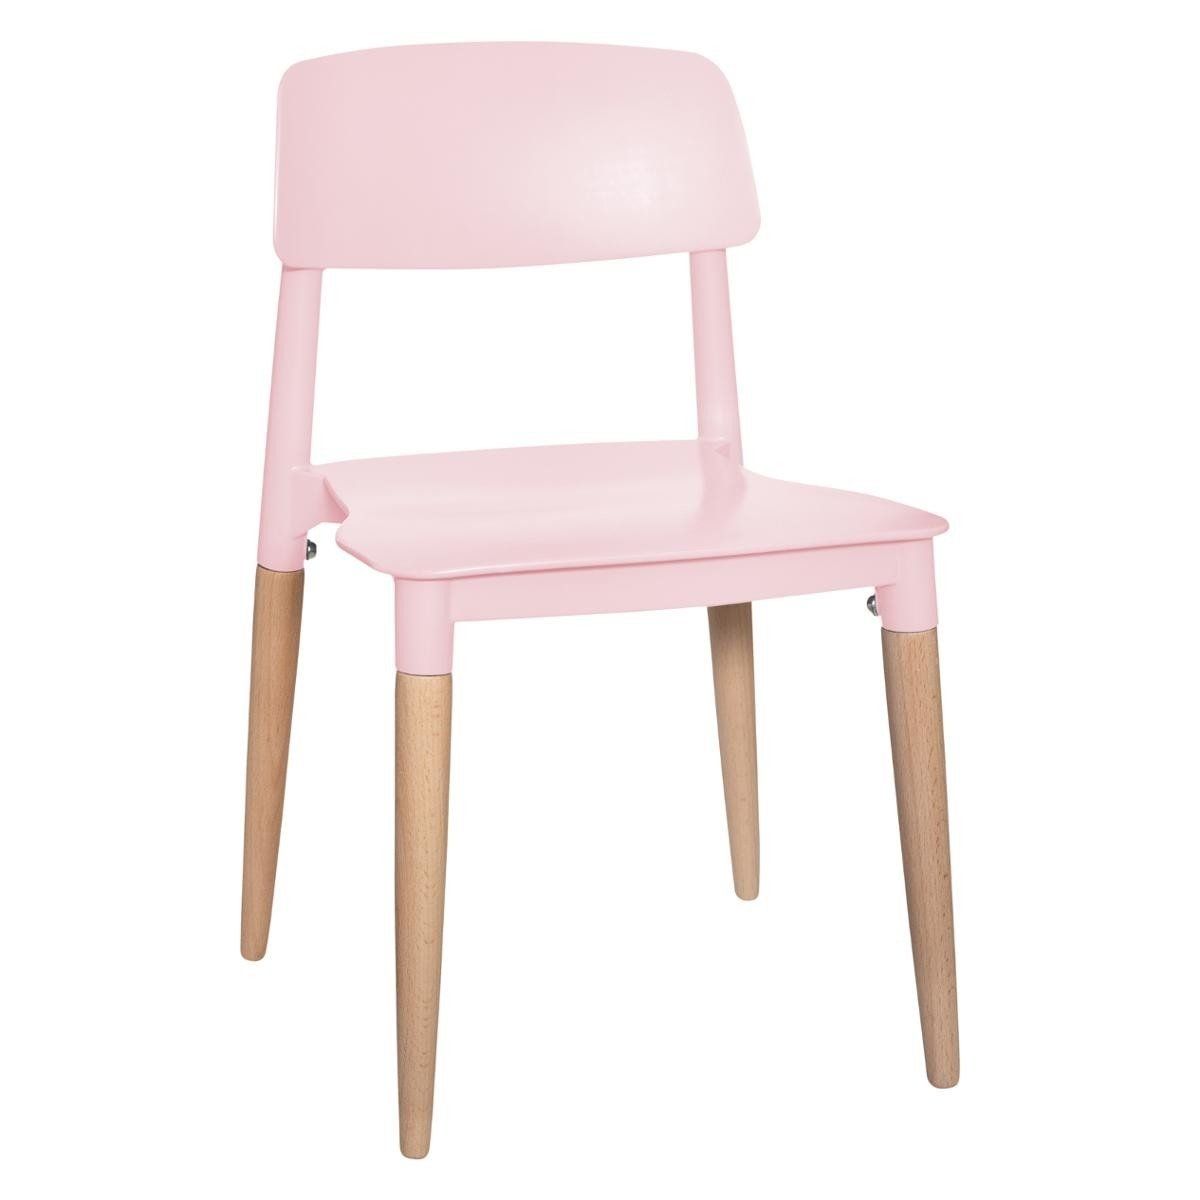 Atmosphera for kids Dětská židle stůl, plastová, růžová - EMAKO.CZ s.r.o.